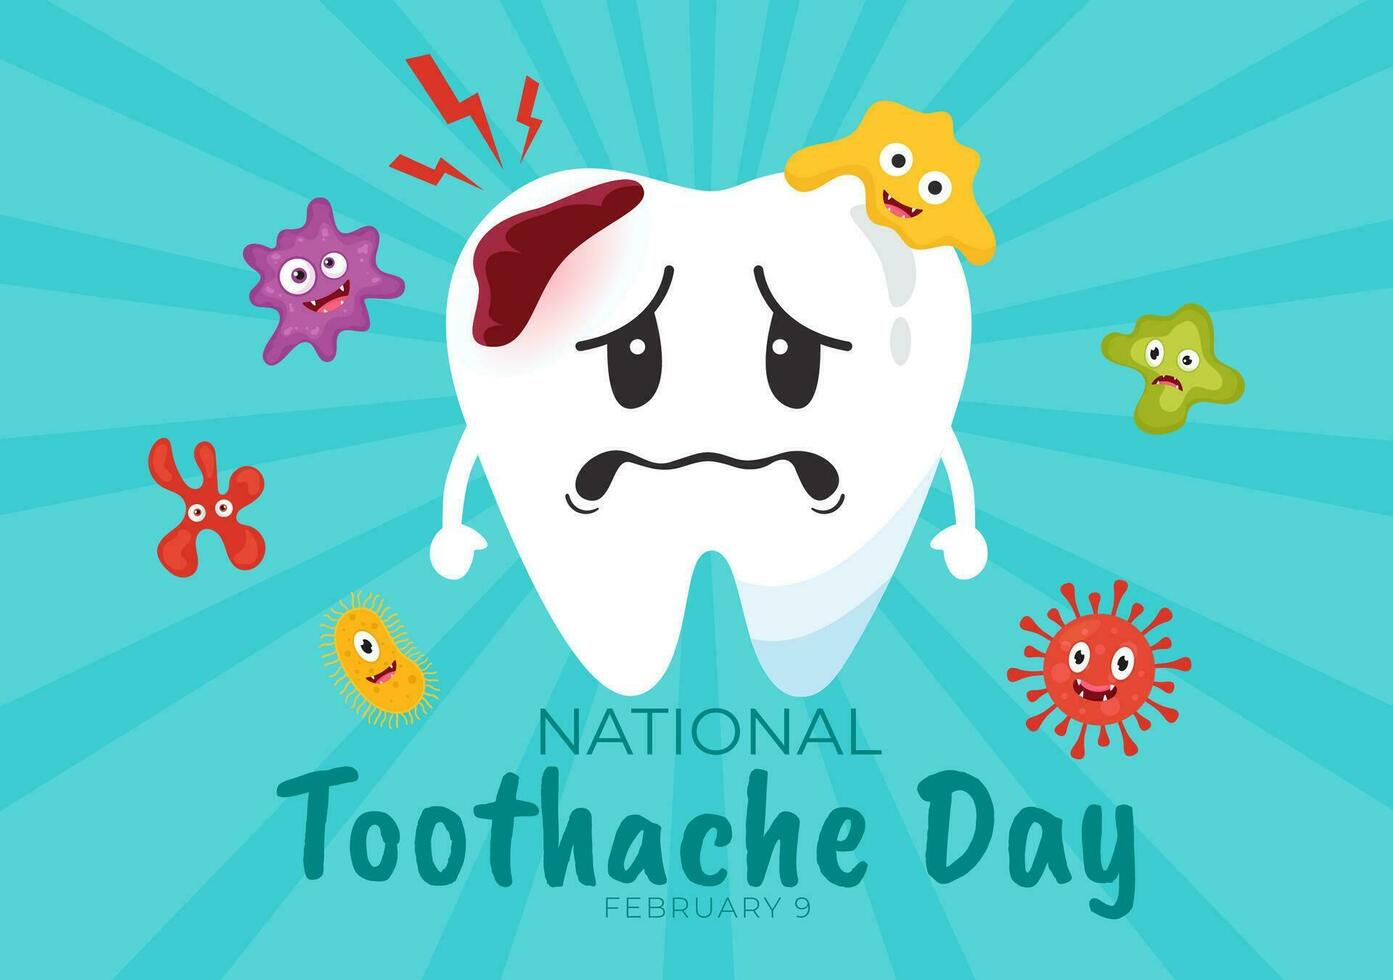 National Zahnschmerzen Tag Vektor Illustration auf Februar 9 zum Dental Hygiene damit wie nicht zu Ursache Schmerzen von Keime oder Bakterien im eben Hintergrund